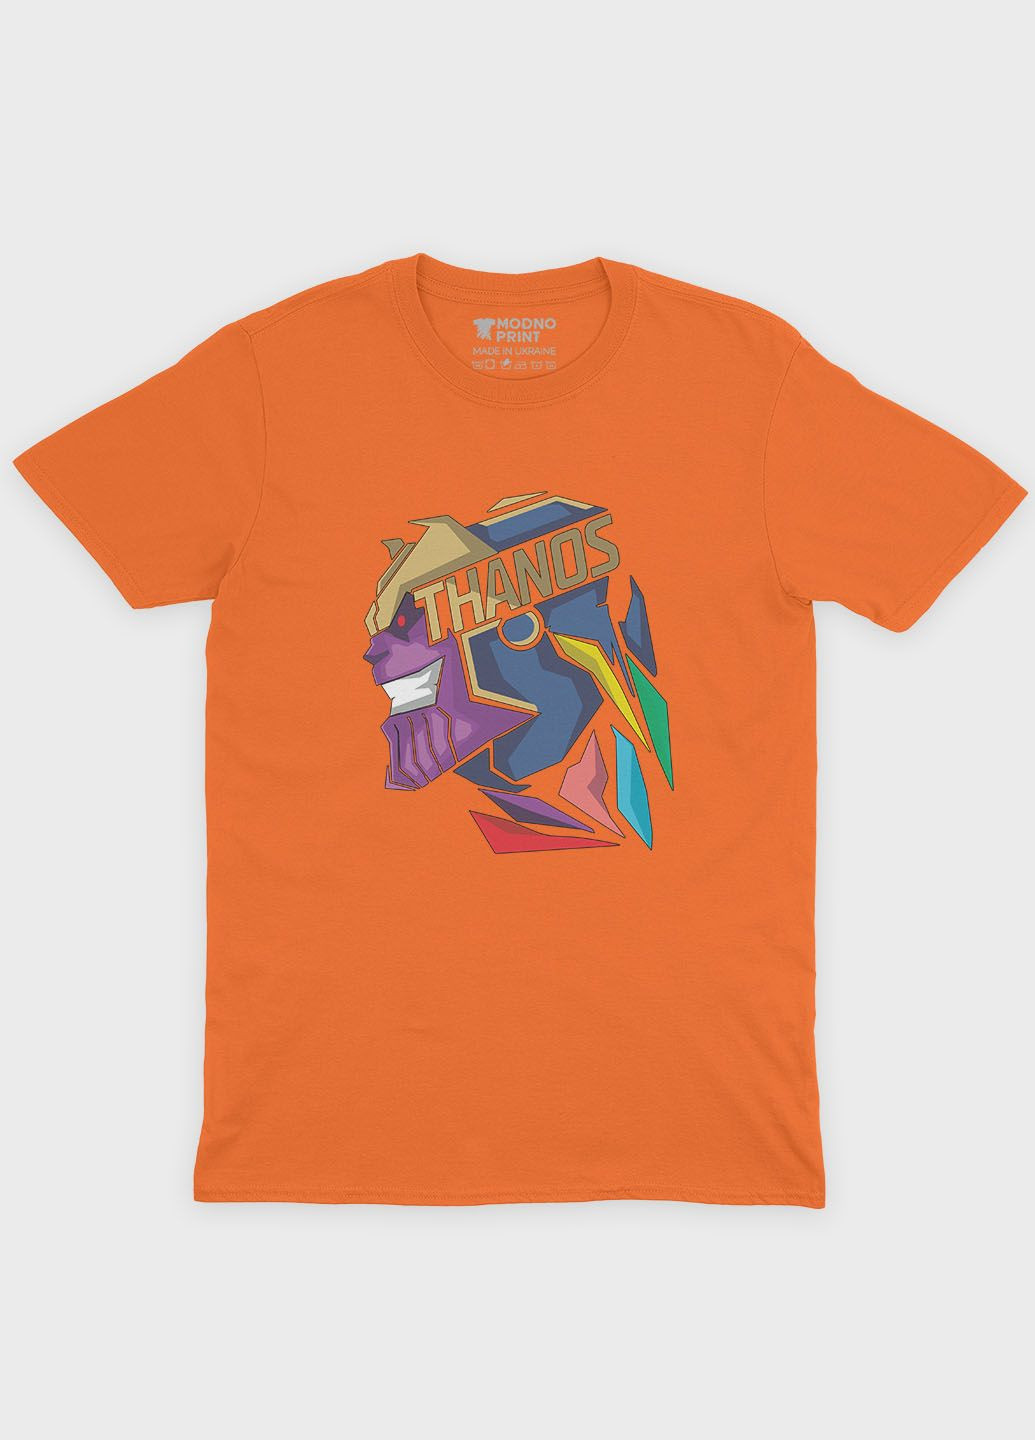 Помаранчева демісезонна футболка для хлопчика з принтом супезлодія - танос (ts001-1-ora-006-019-002-b) Modno